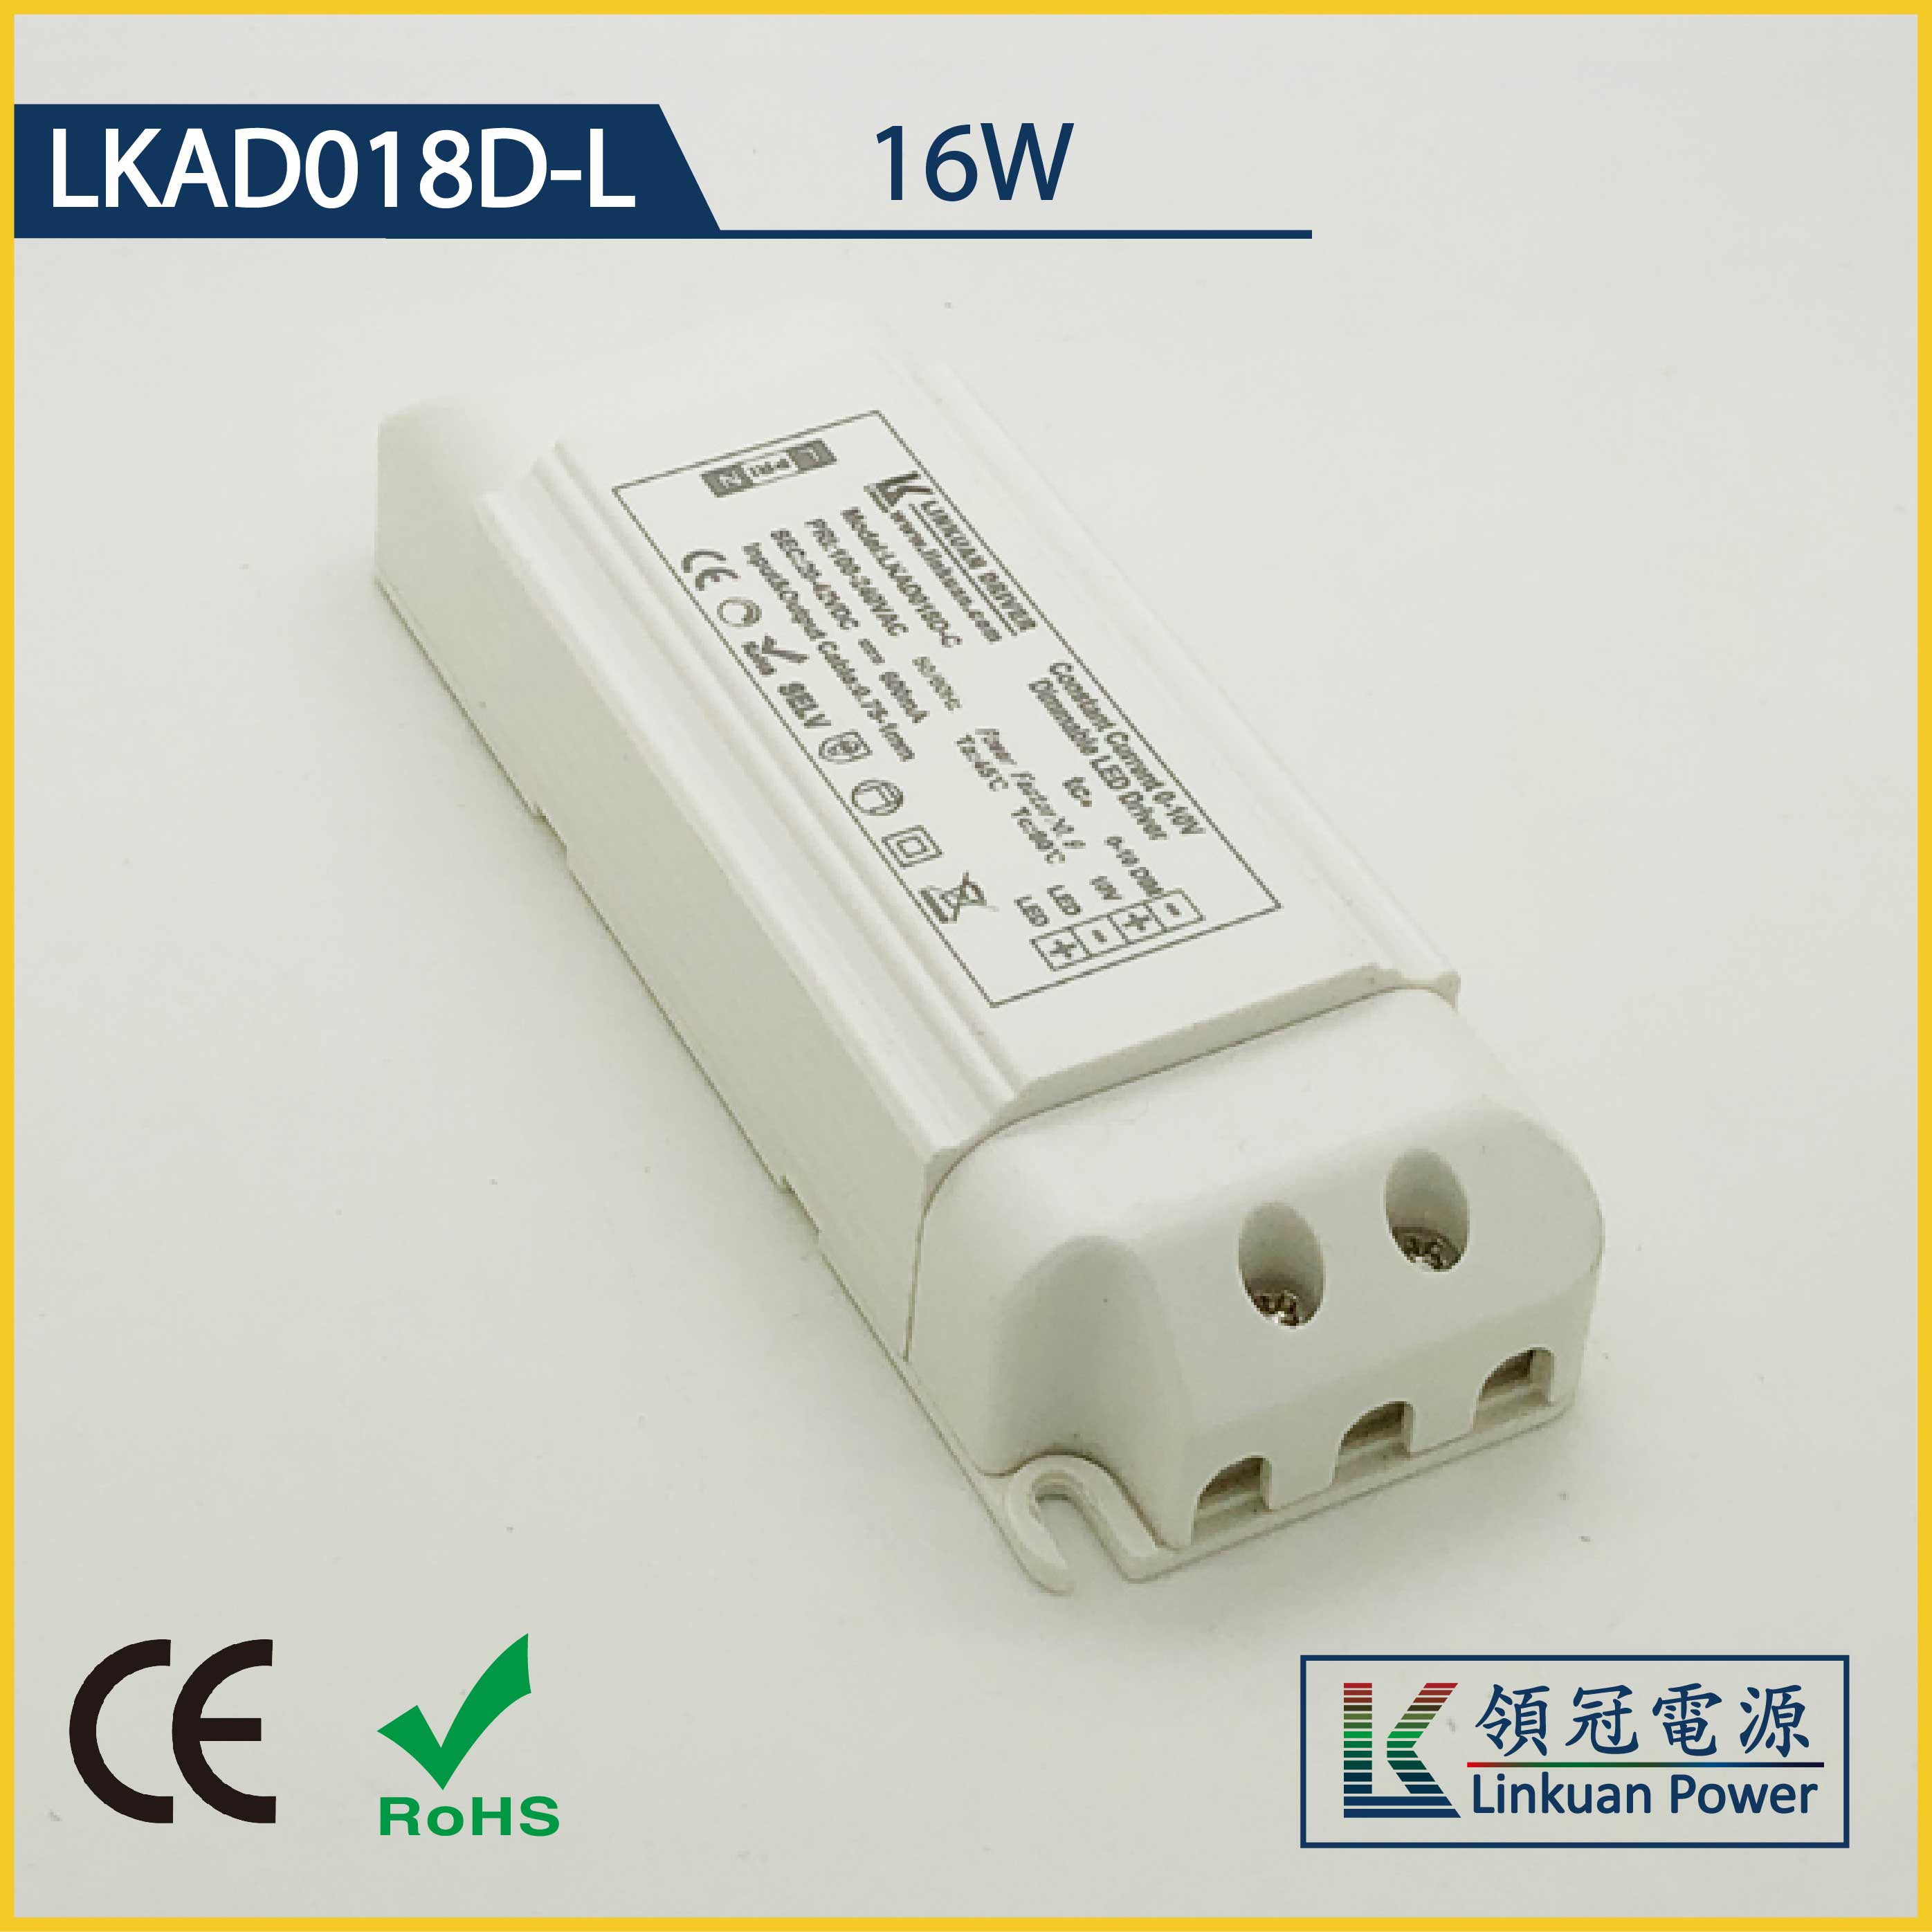 LKAD018D-L 16W 5-42V 400mA 0-10V CCT Adjusting LED drivers